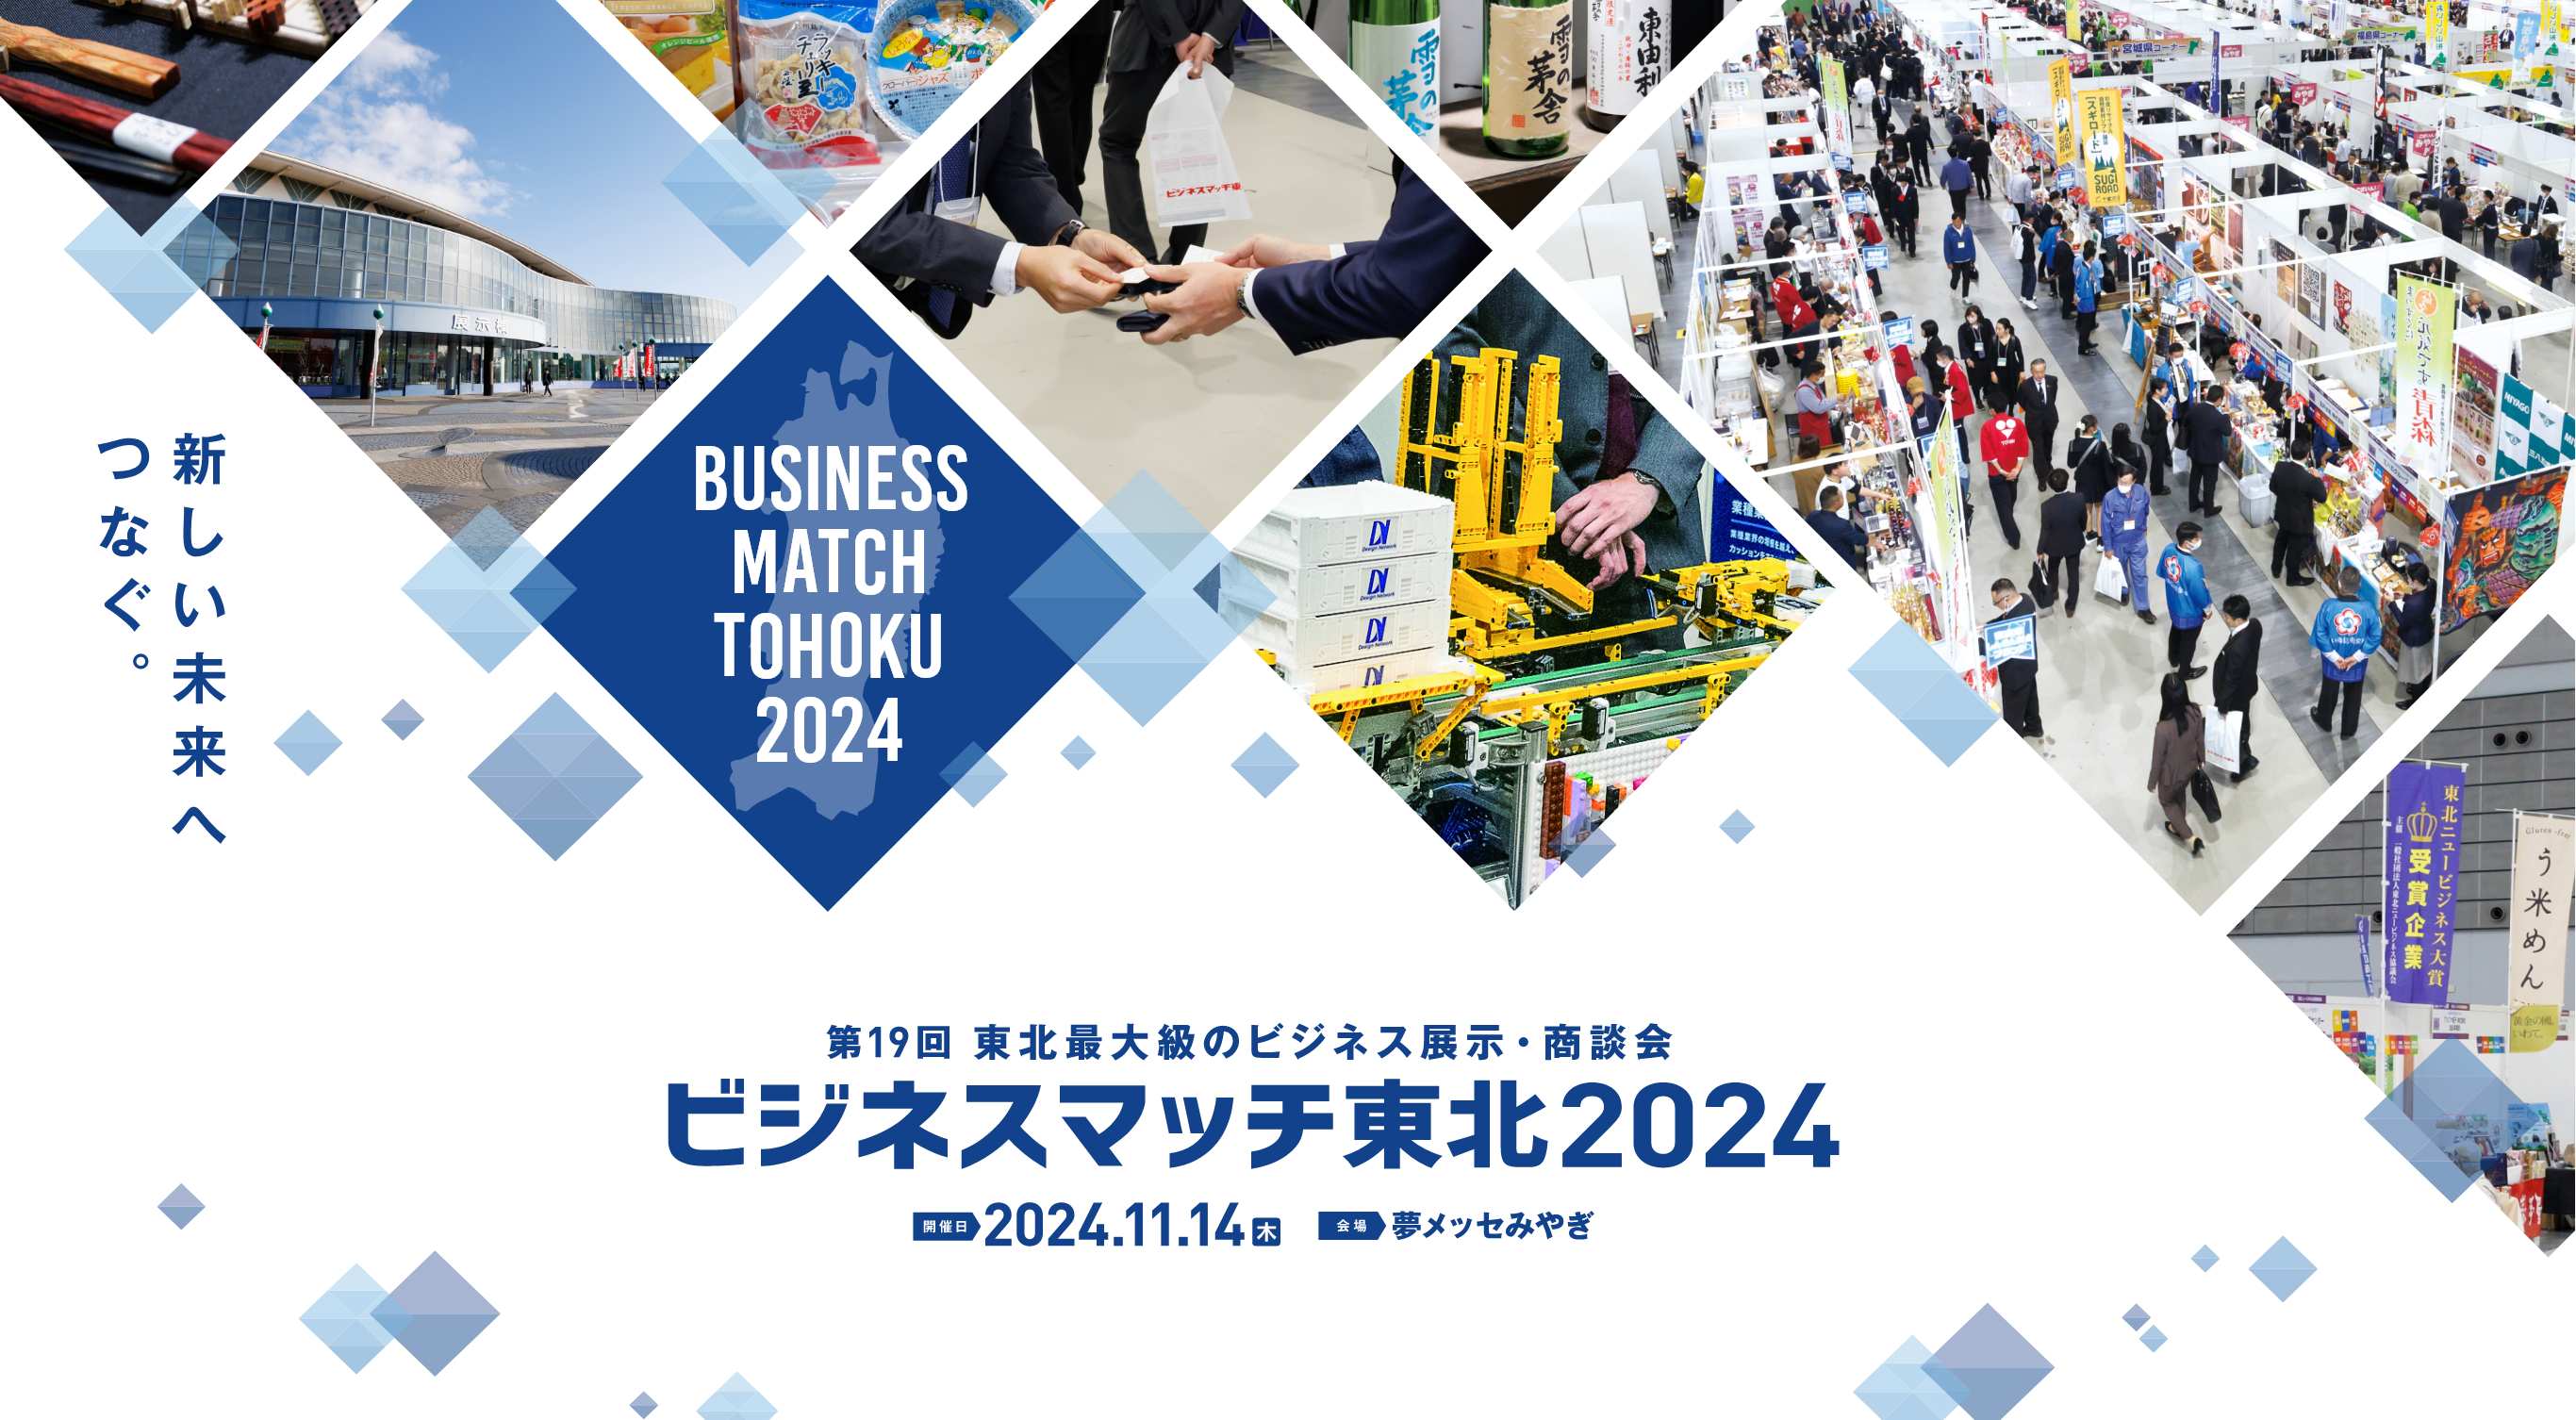 BUSINESS MATCH TOHOKU 2022 SPRING 第16回 東北最大級のビジネス展示・商談会 ビジネスマッチ東北 2022春